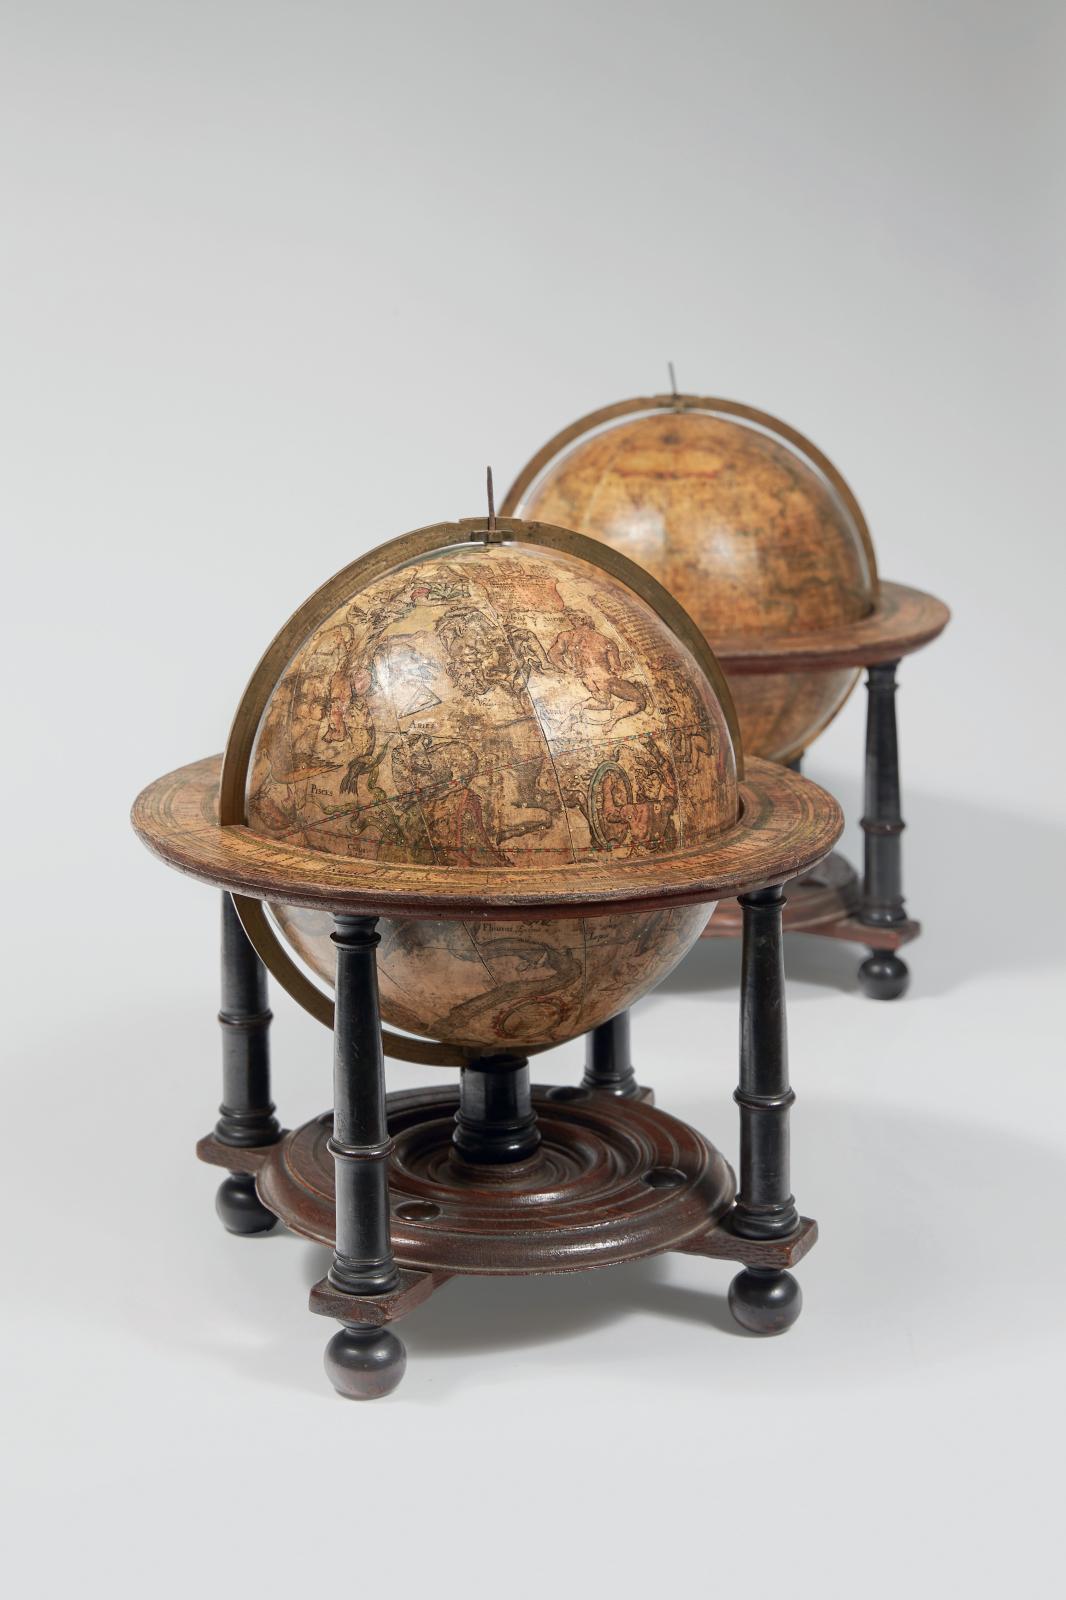 Willem Janszoon Blaeu (1571-1638), globes terrestre et céleste, Amsterdam «1602» (après 1618), constitués de douze fuseaux gravés et aquarellés, monté